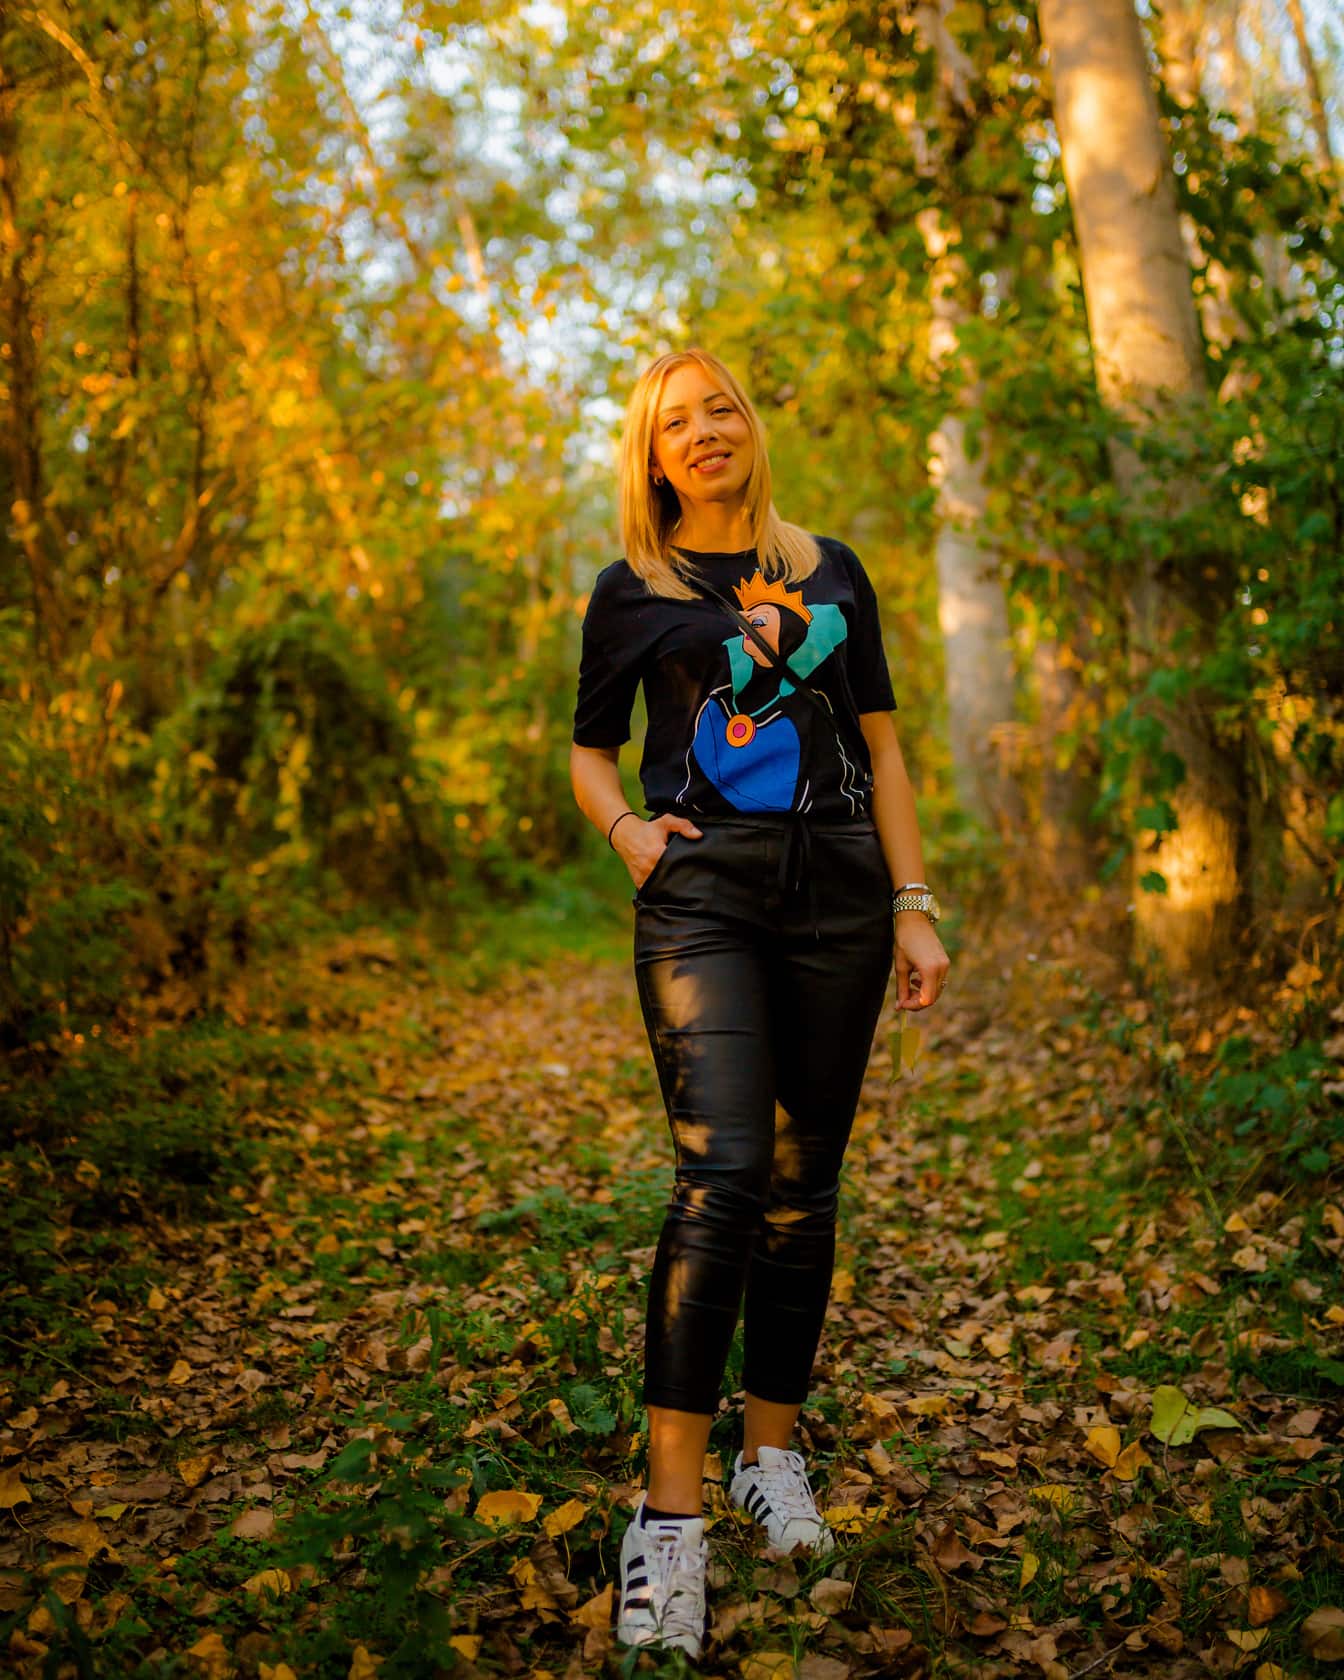 Kaunis hymyilevä blondi seisoo metsässä mustassa muodikkaassa asussa